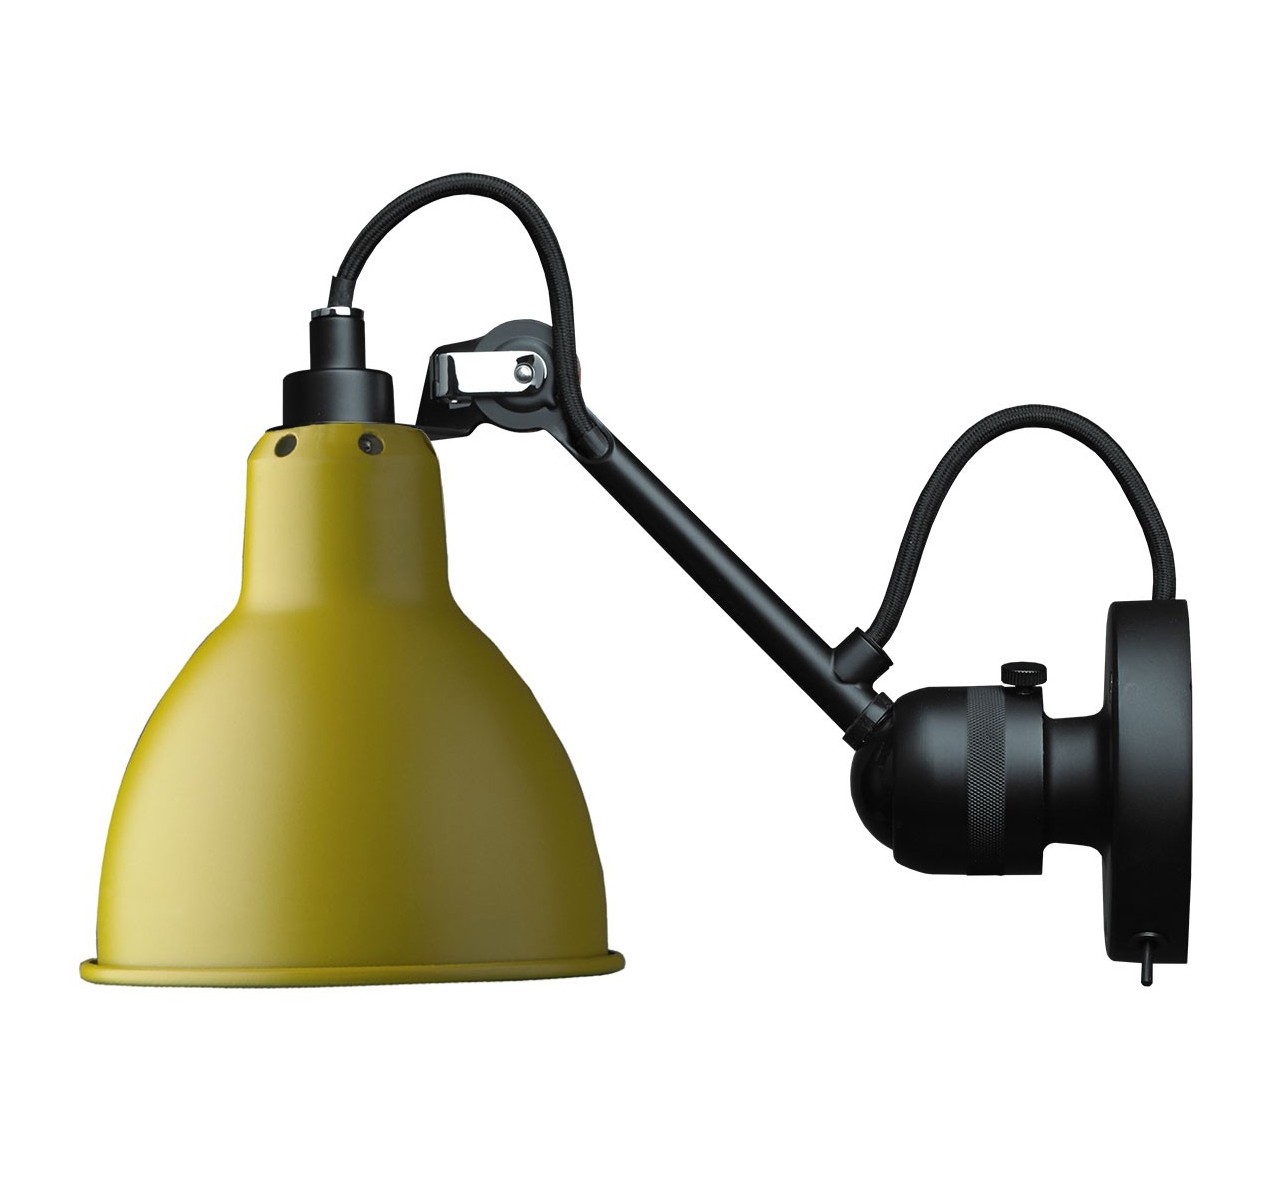 Arreglo Inhibir contraste Aplique Lampe Gras nº 304 Round Shade | BATAVIA